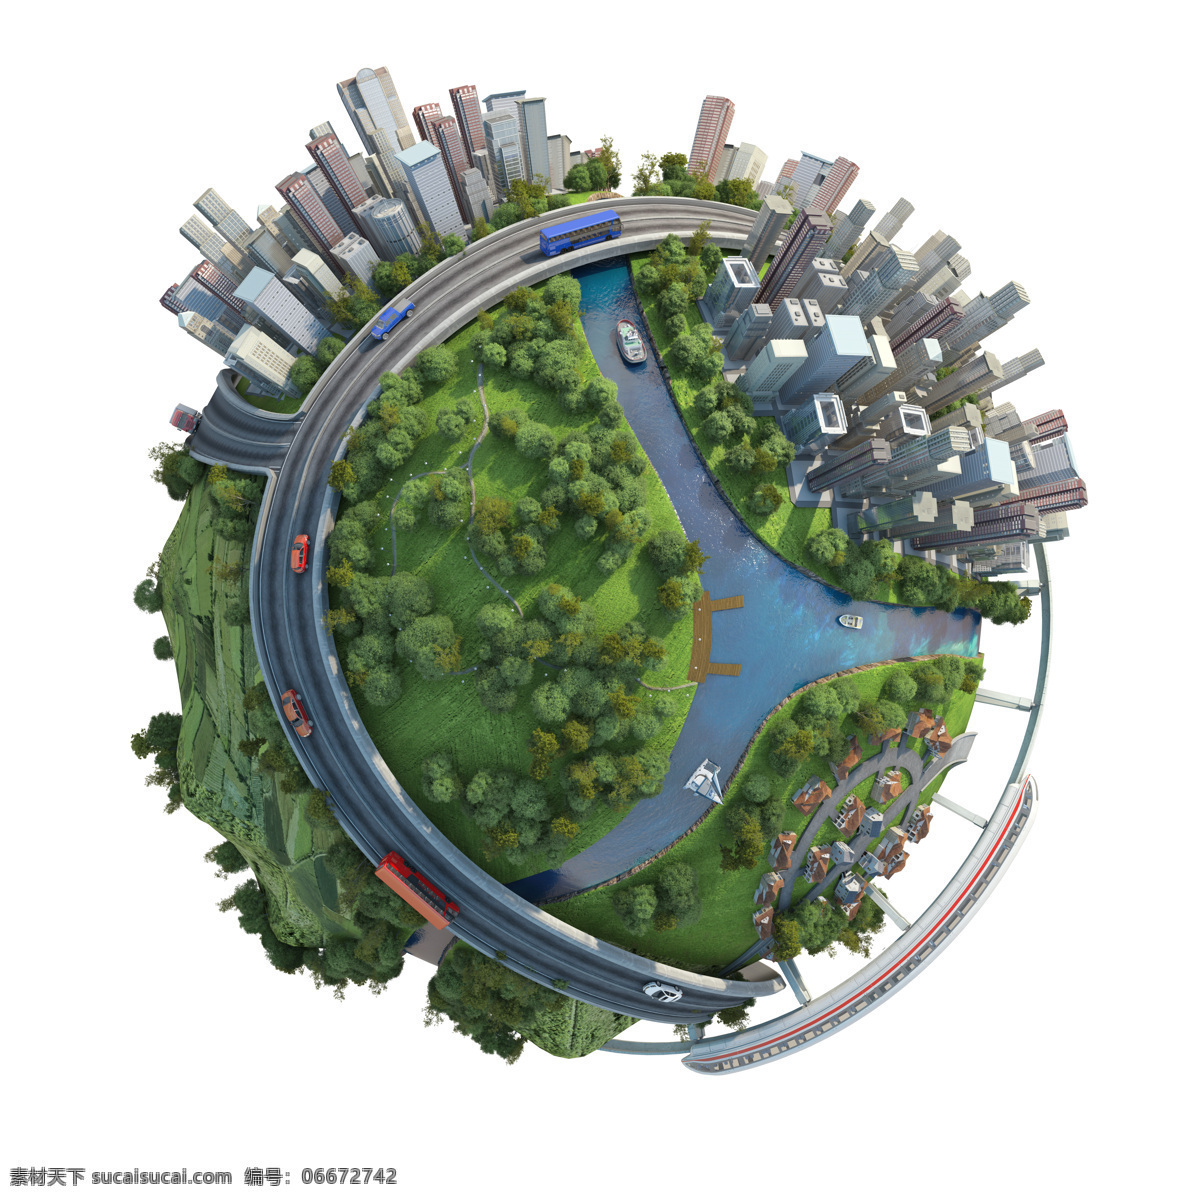 创意 地球 弯曲 街道 创意地球素材 绿色地球 城市 河道 高铁 船只 公路 汽车 高楼 绿色草地 楼群 绿色树木 弯曲街道 环保 低 碳 绿色